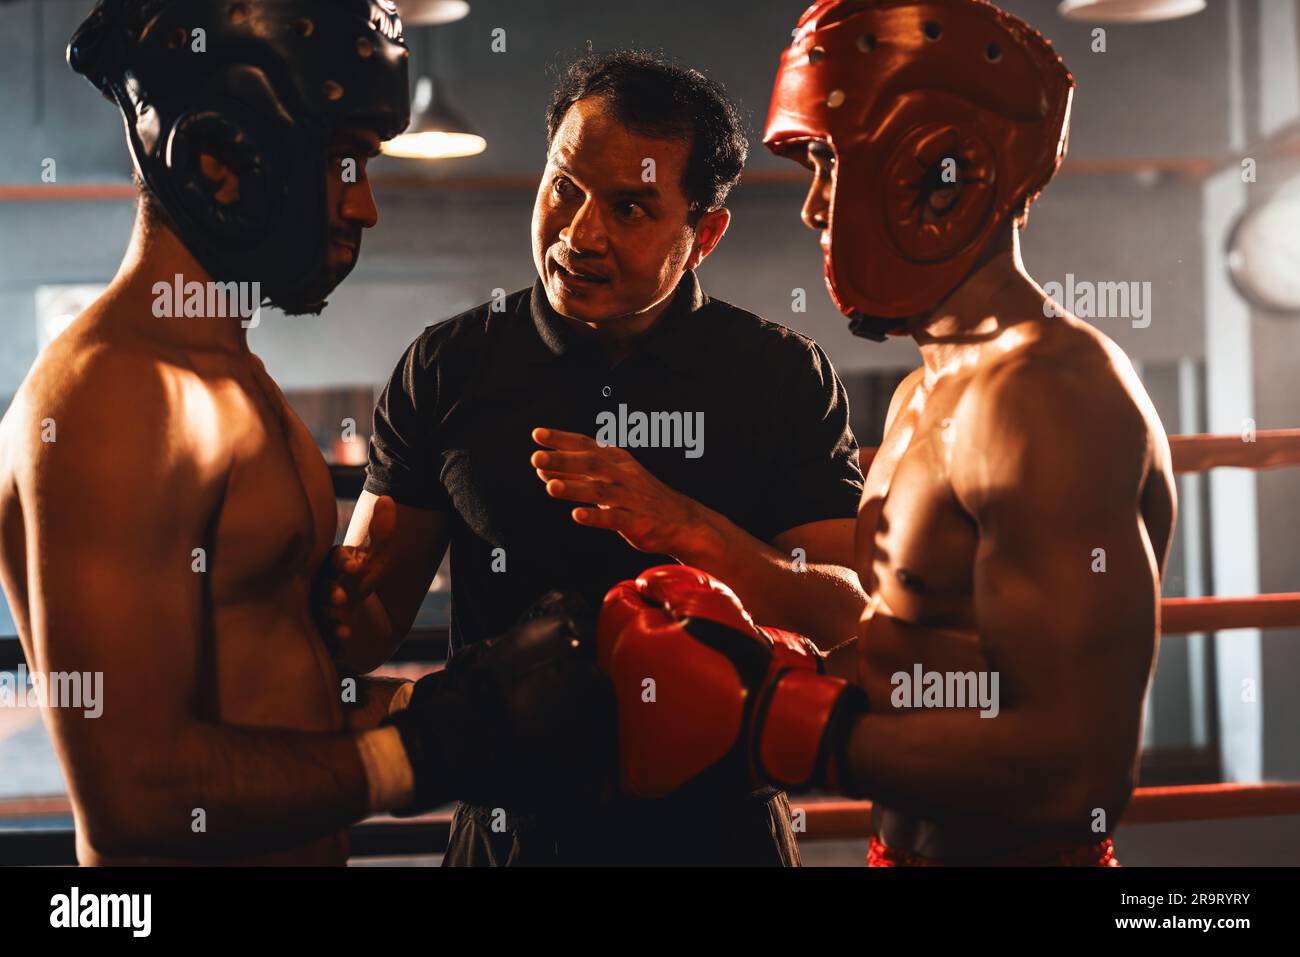 Ein Boxer mit Schutzhelm oder Kopfschutz zeigt sich aneinander, während der Schiedsrichter dem Gegner die Regeln für die Interaktion erklärt, bevor er mit dem Boxkampf beginnt Stockfoto